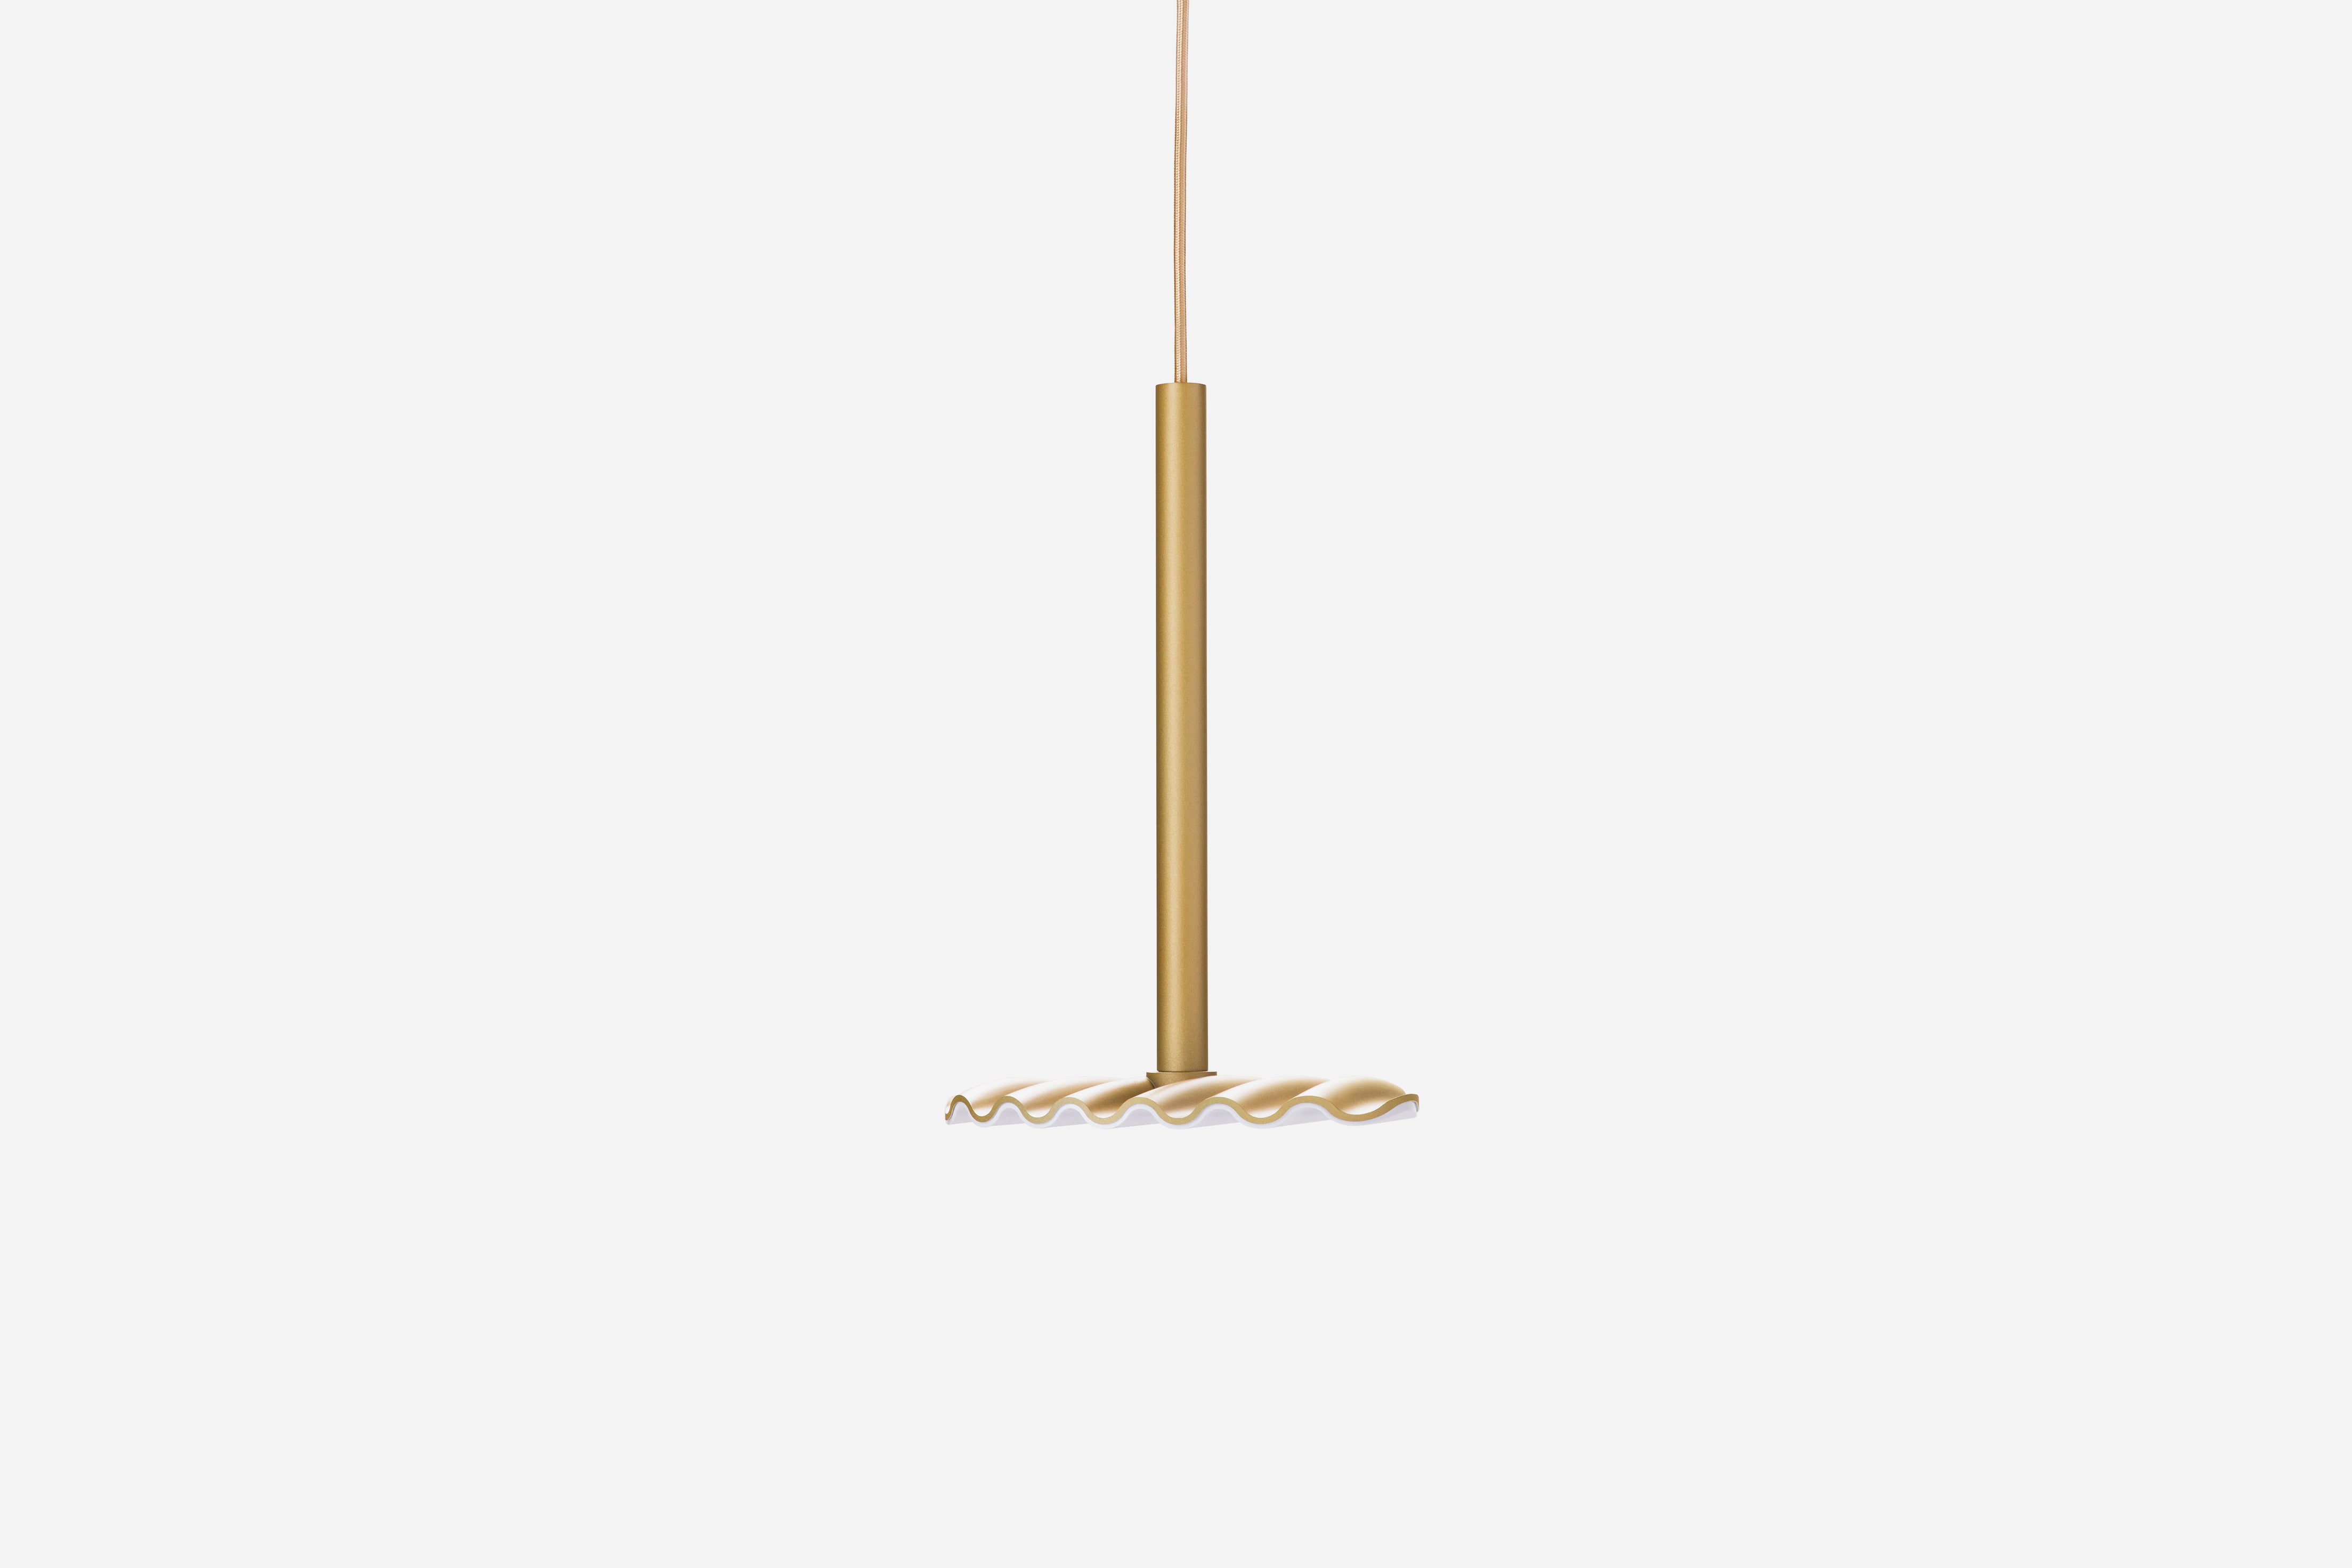 CHIPS LAMP  Ziinlife Modern Design Furniture Hong Kong  Gold